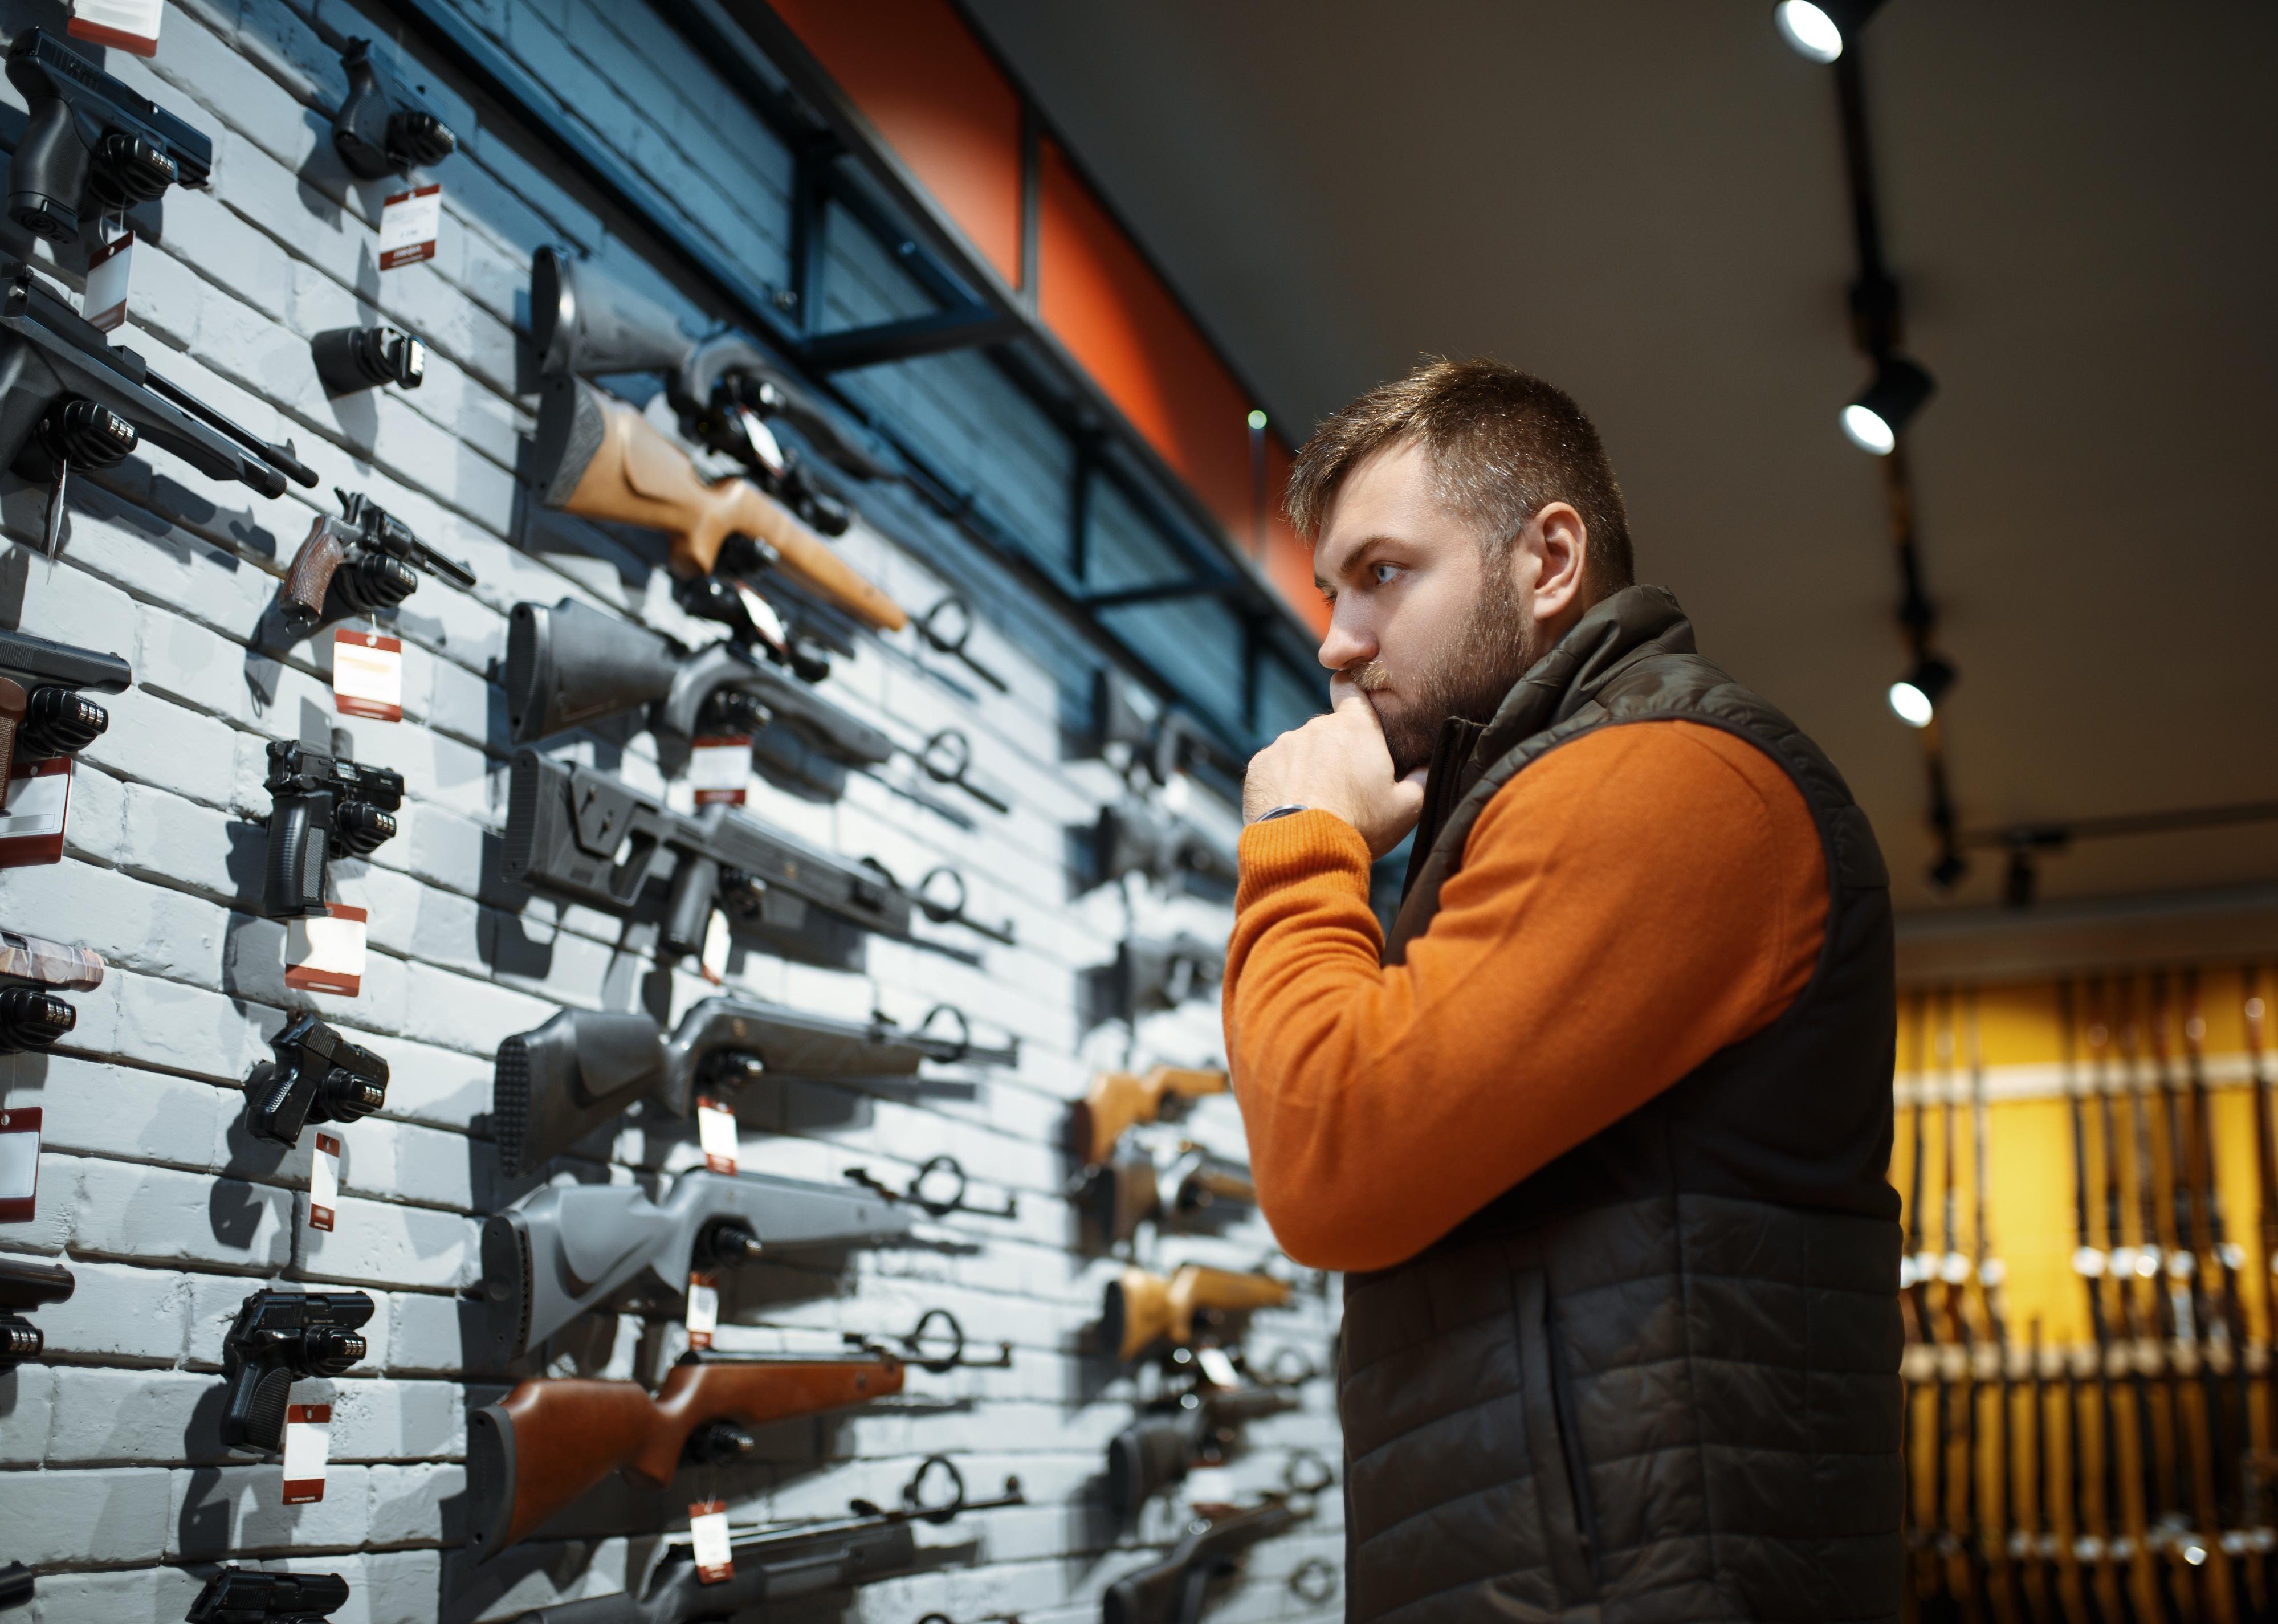 Person looking at a wall display of guns.